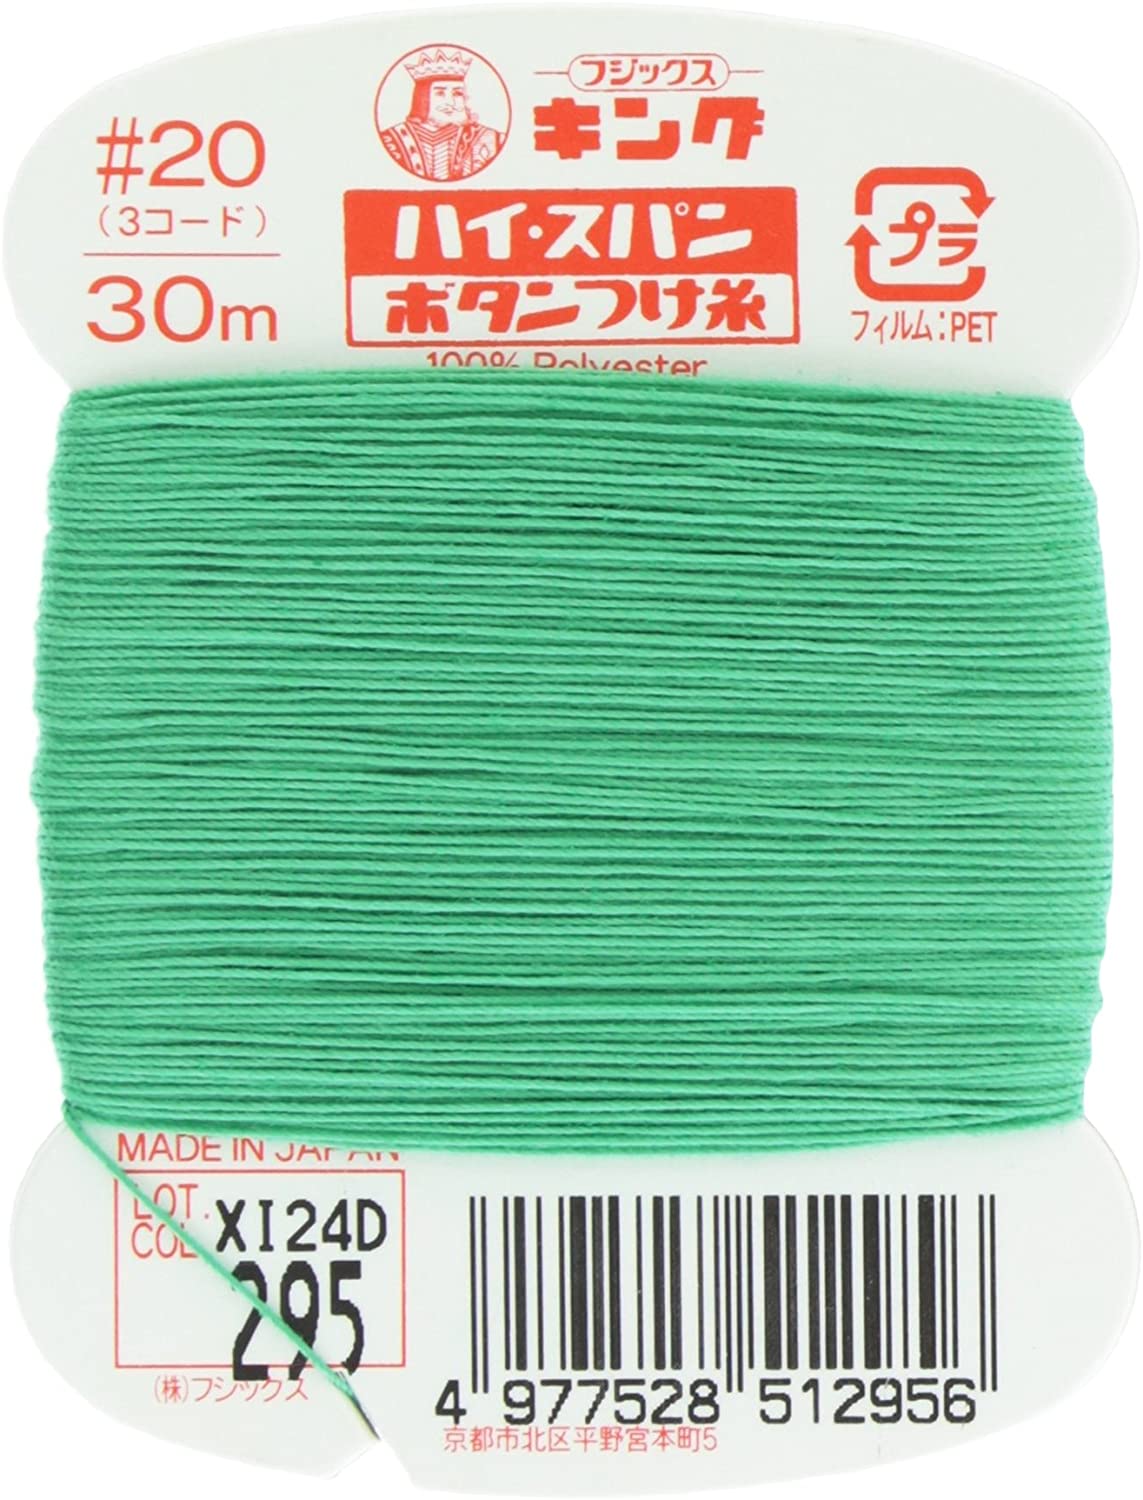 FK51-295 ハイスパンボタンつけ糸 #20 30m巻 (枚)